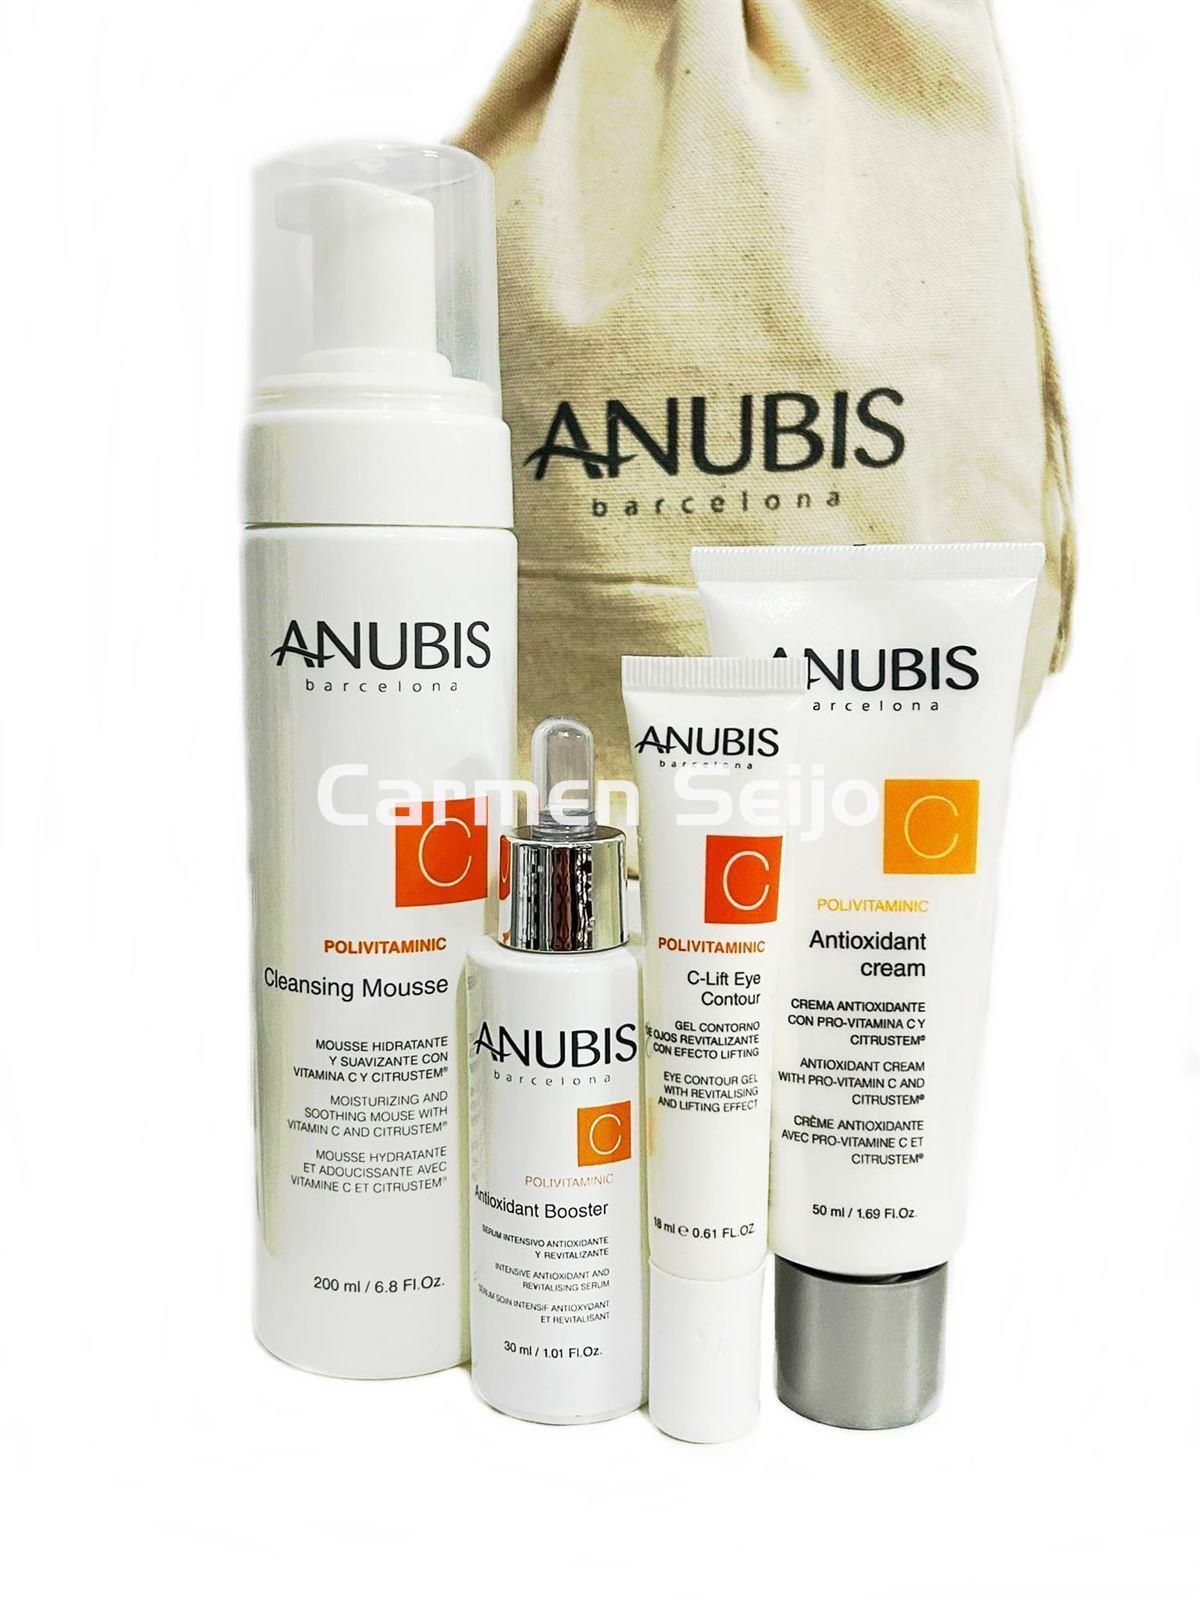 Anubis Pack Antioxidante Vitamina C Polivitaminic - Imagen 1